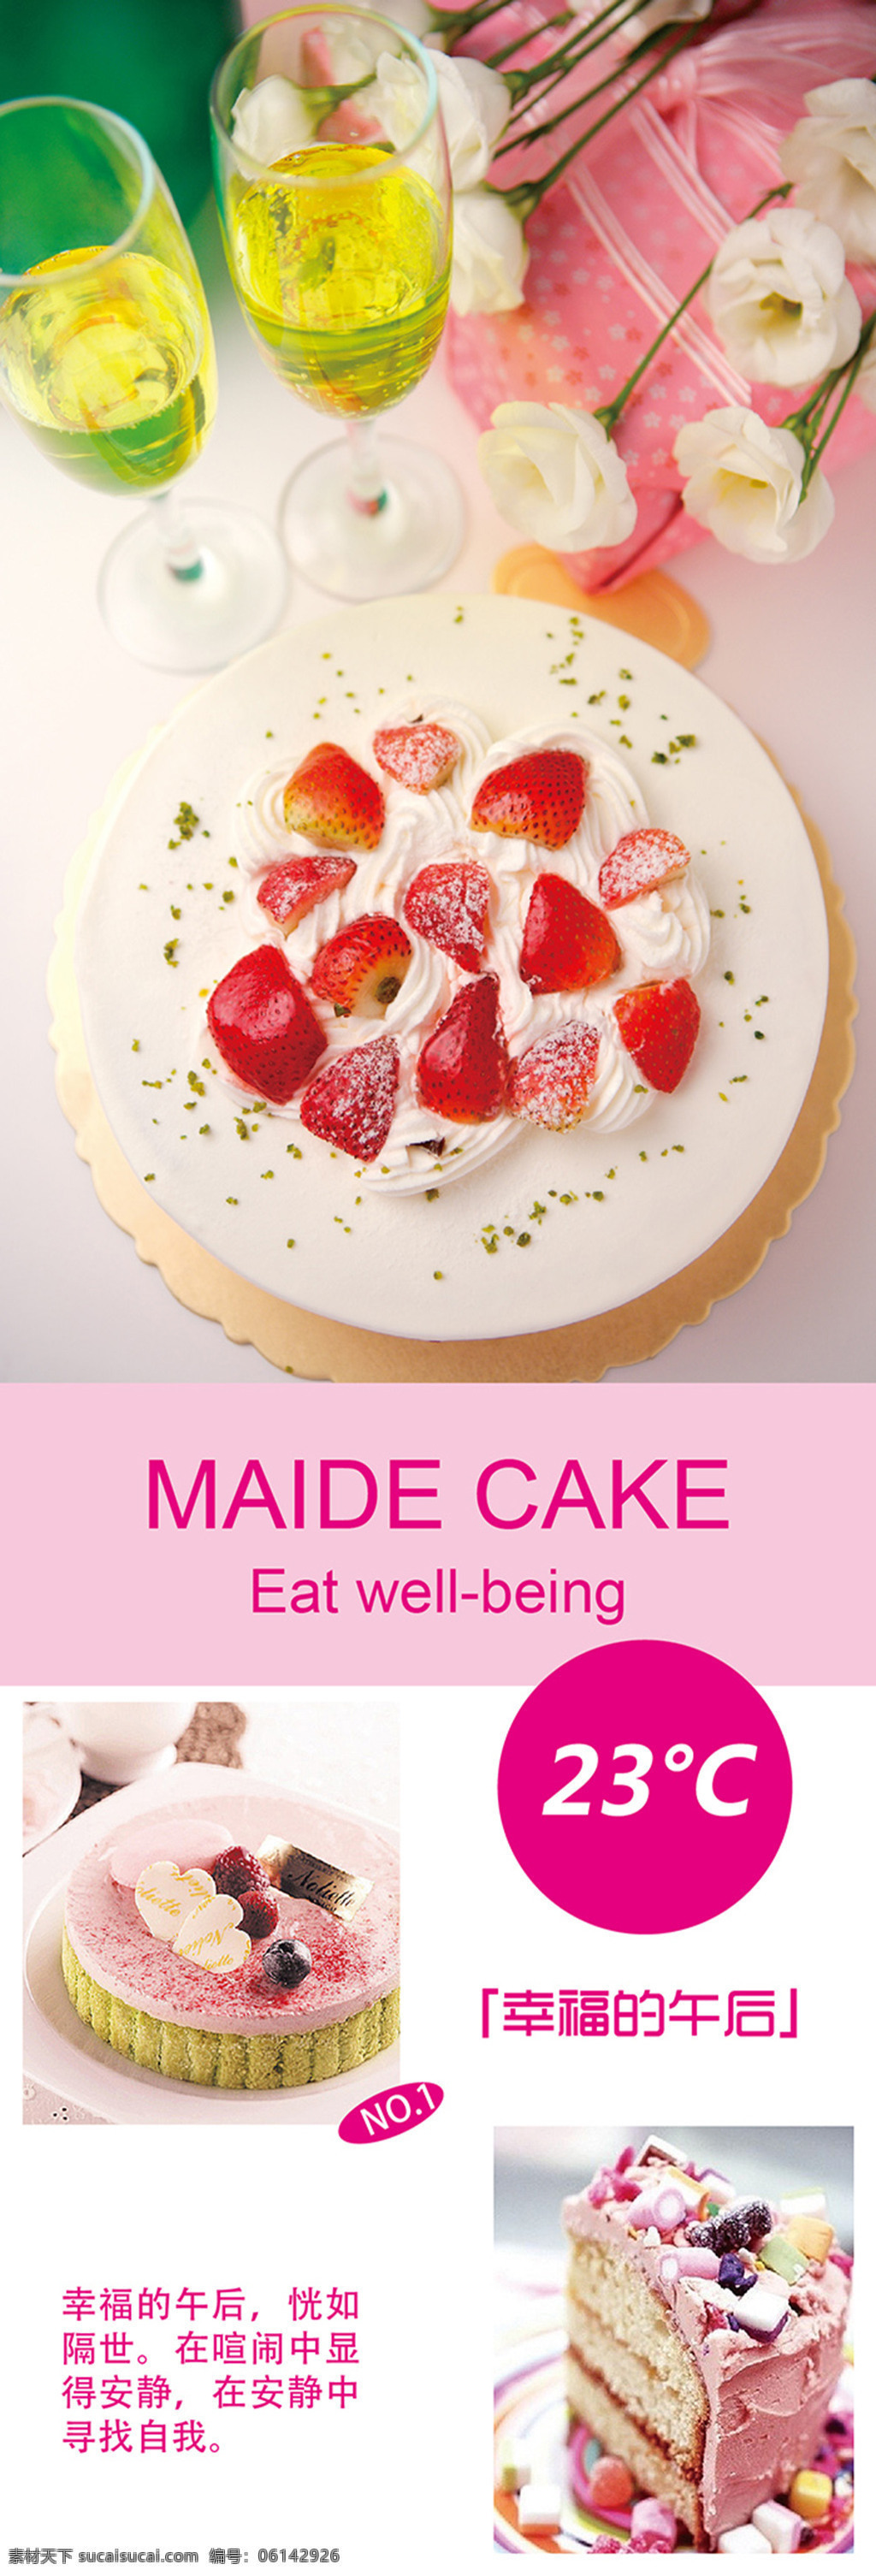 蛋糕 店 促销 海报 蛋糕店 促销海报 活动海报 宣传海报 白色